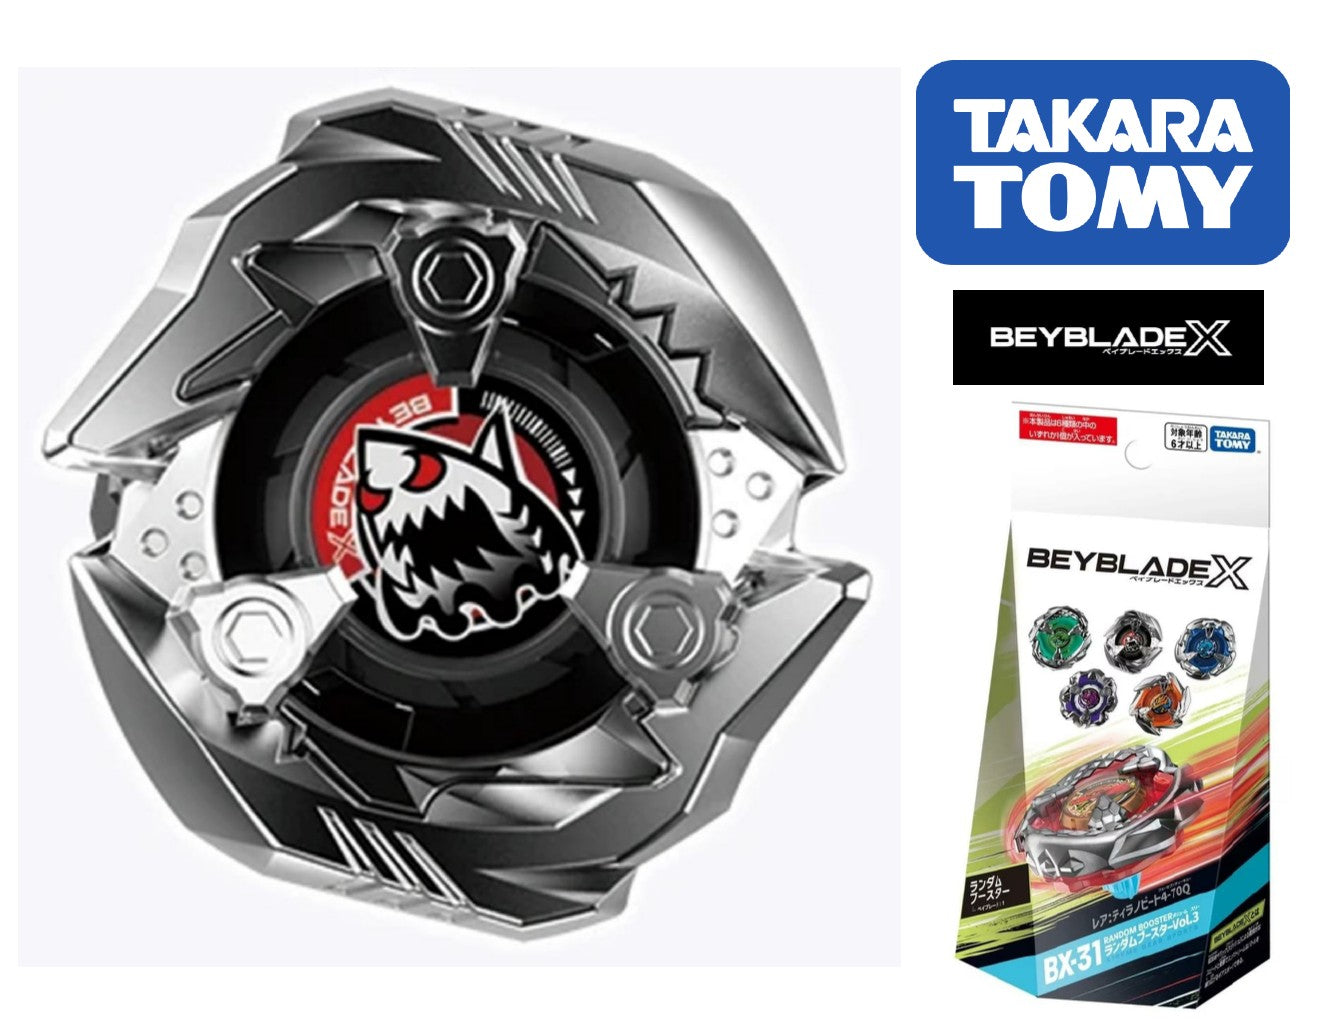 Takara Tomy Beyblade X BX-31 05 Shark Edge 1-60Q (Japan Import 